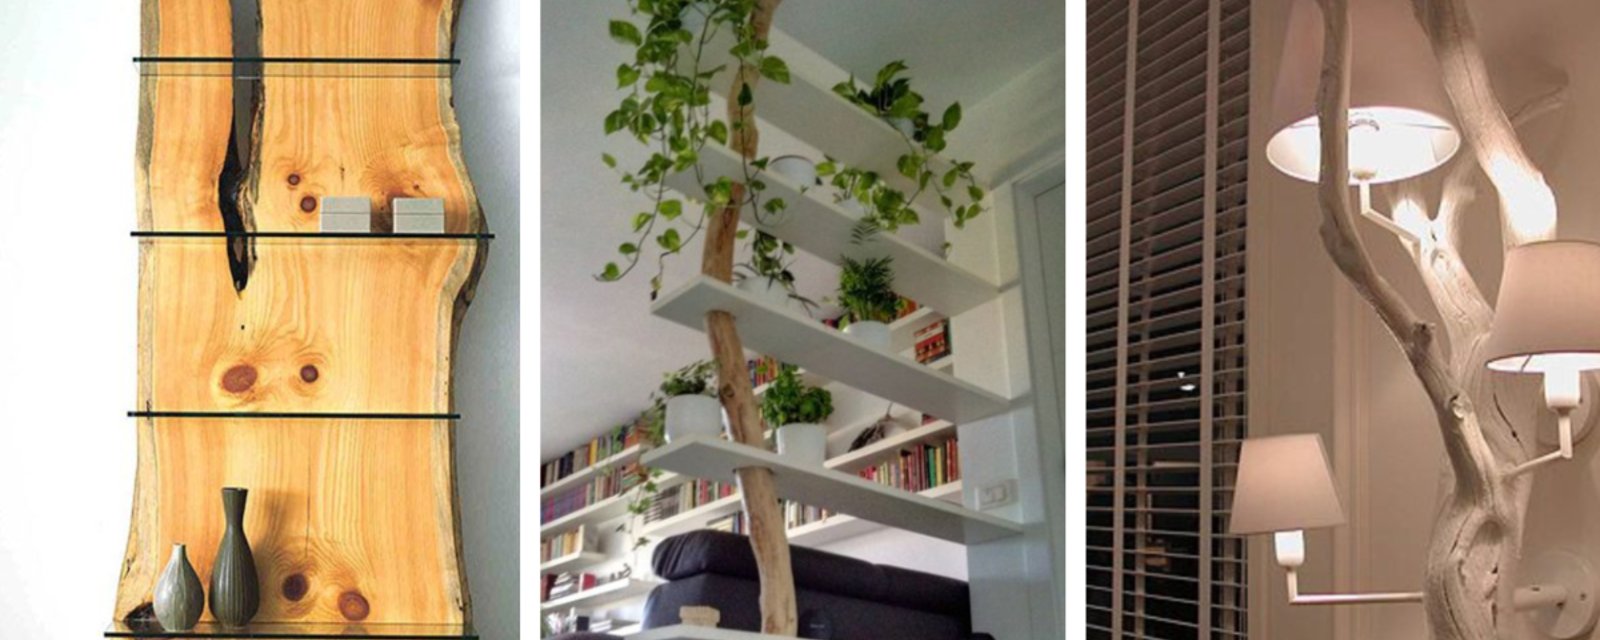 20 façons d'utiliser des troncs d'arbre pour décorer dans la maison